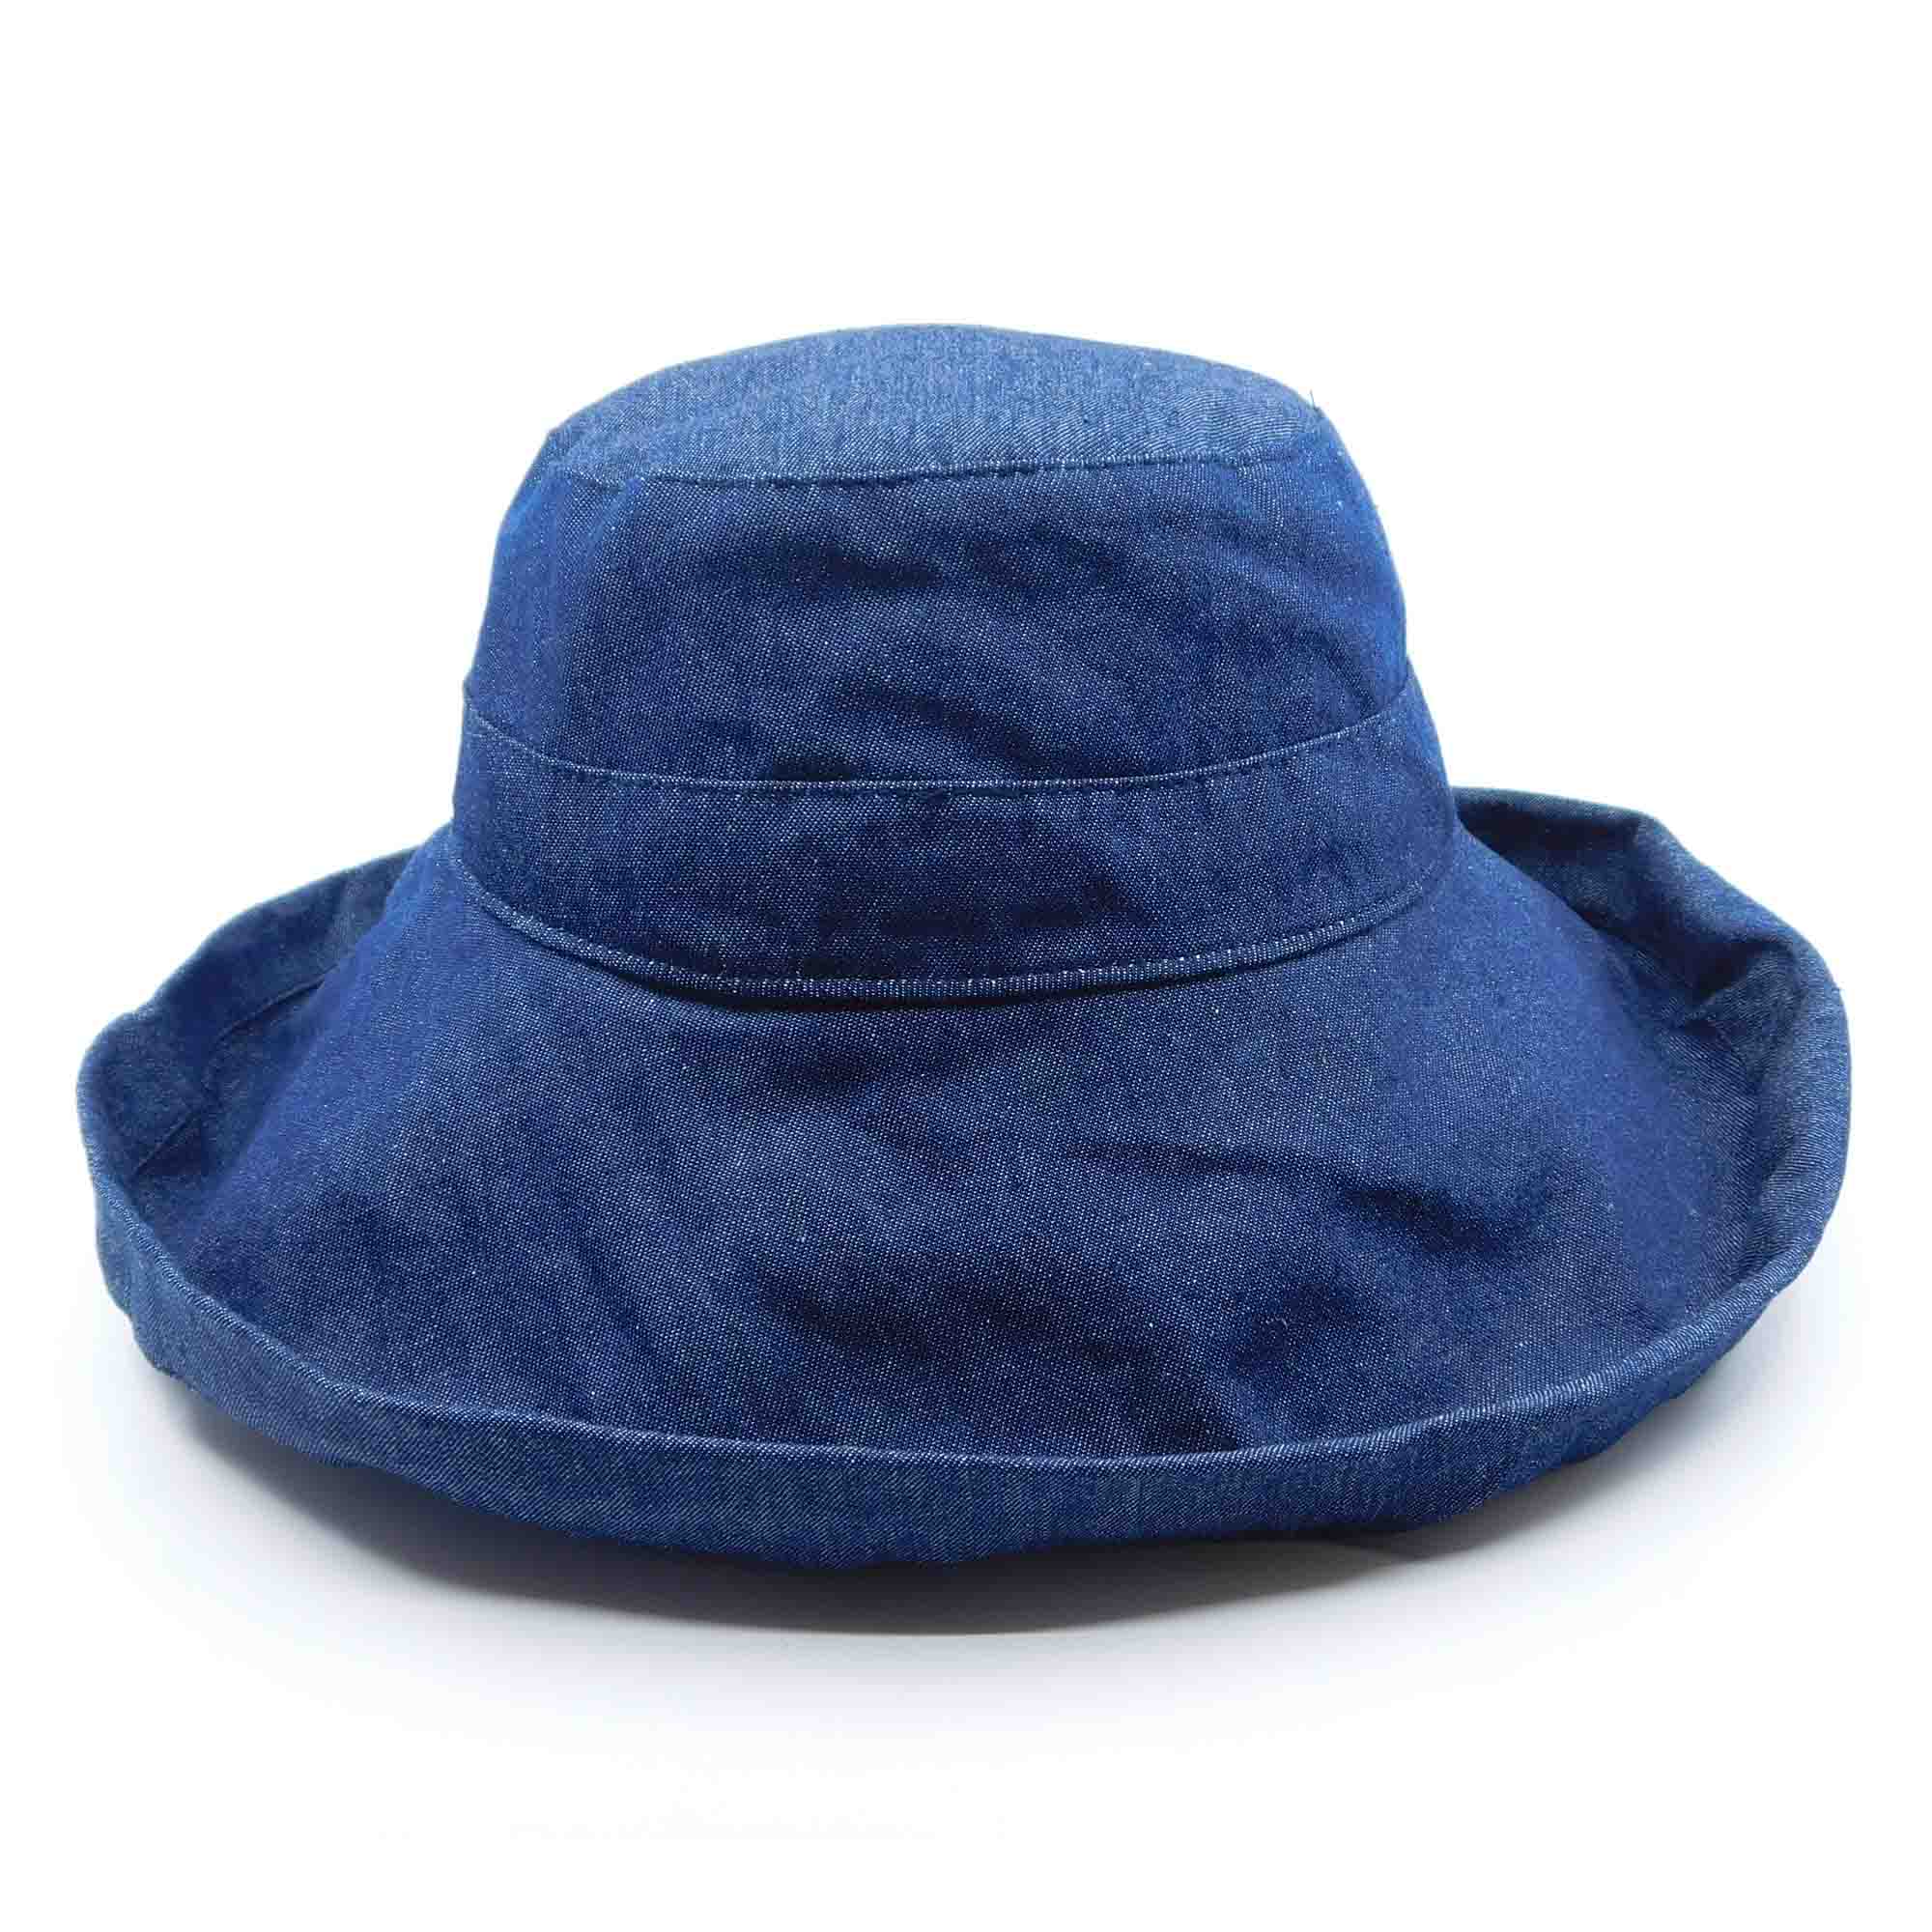 Cotton Breton Hat with Shapeable Brim - Milani Hat Kettle Brim Hat Milani Hats bh010DN Denim M/L (57 - 58 cm) 